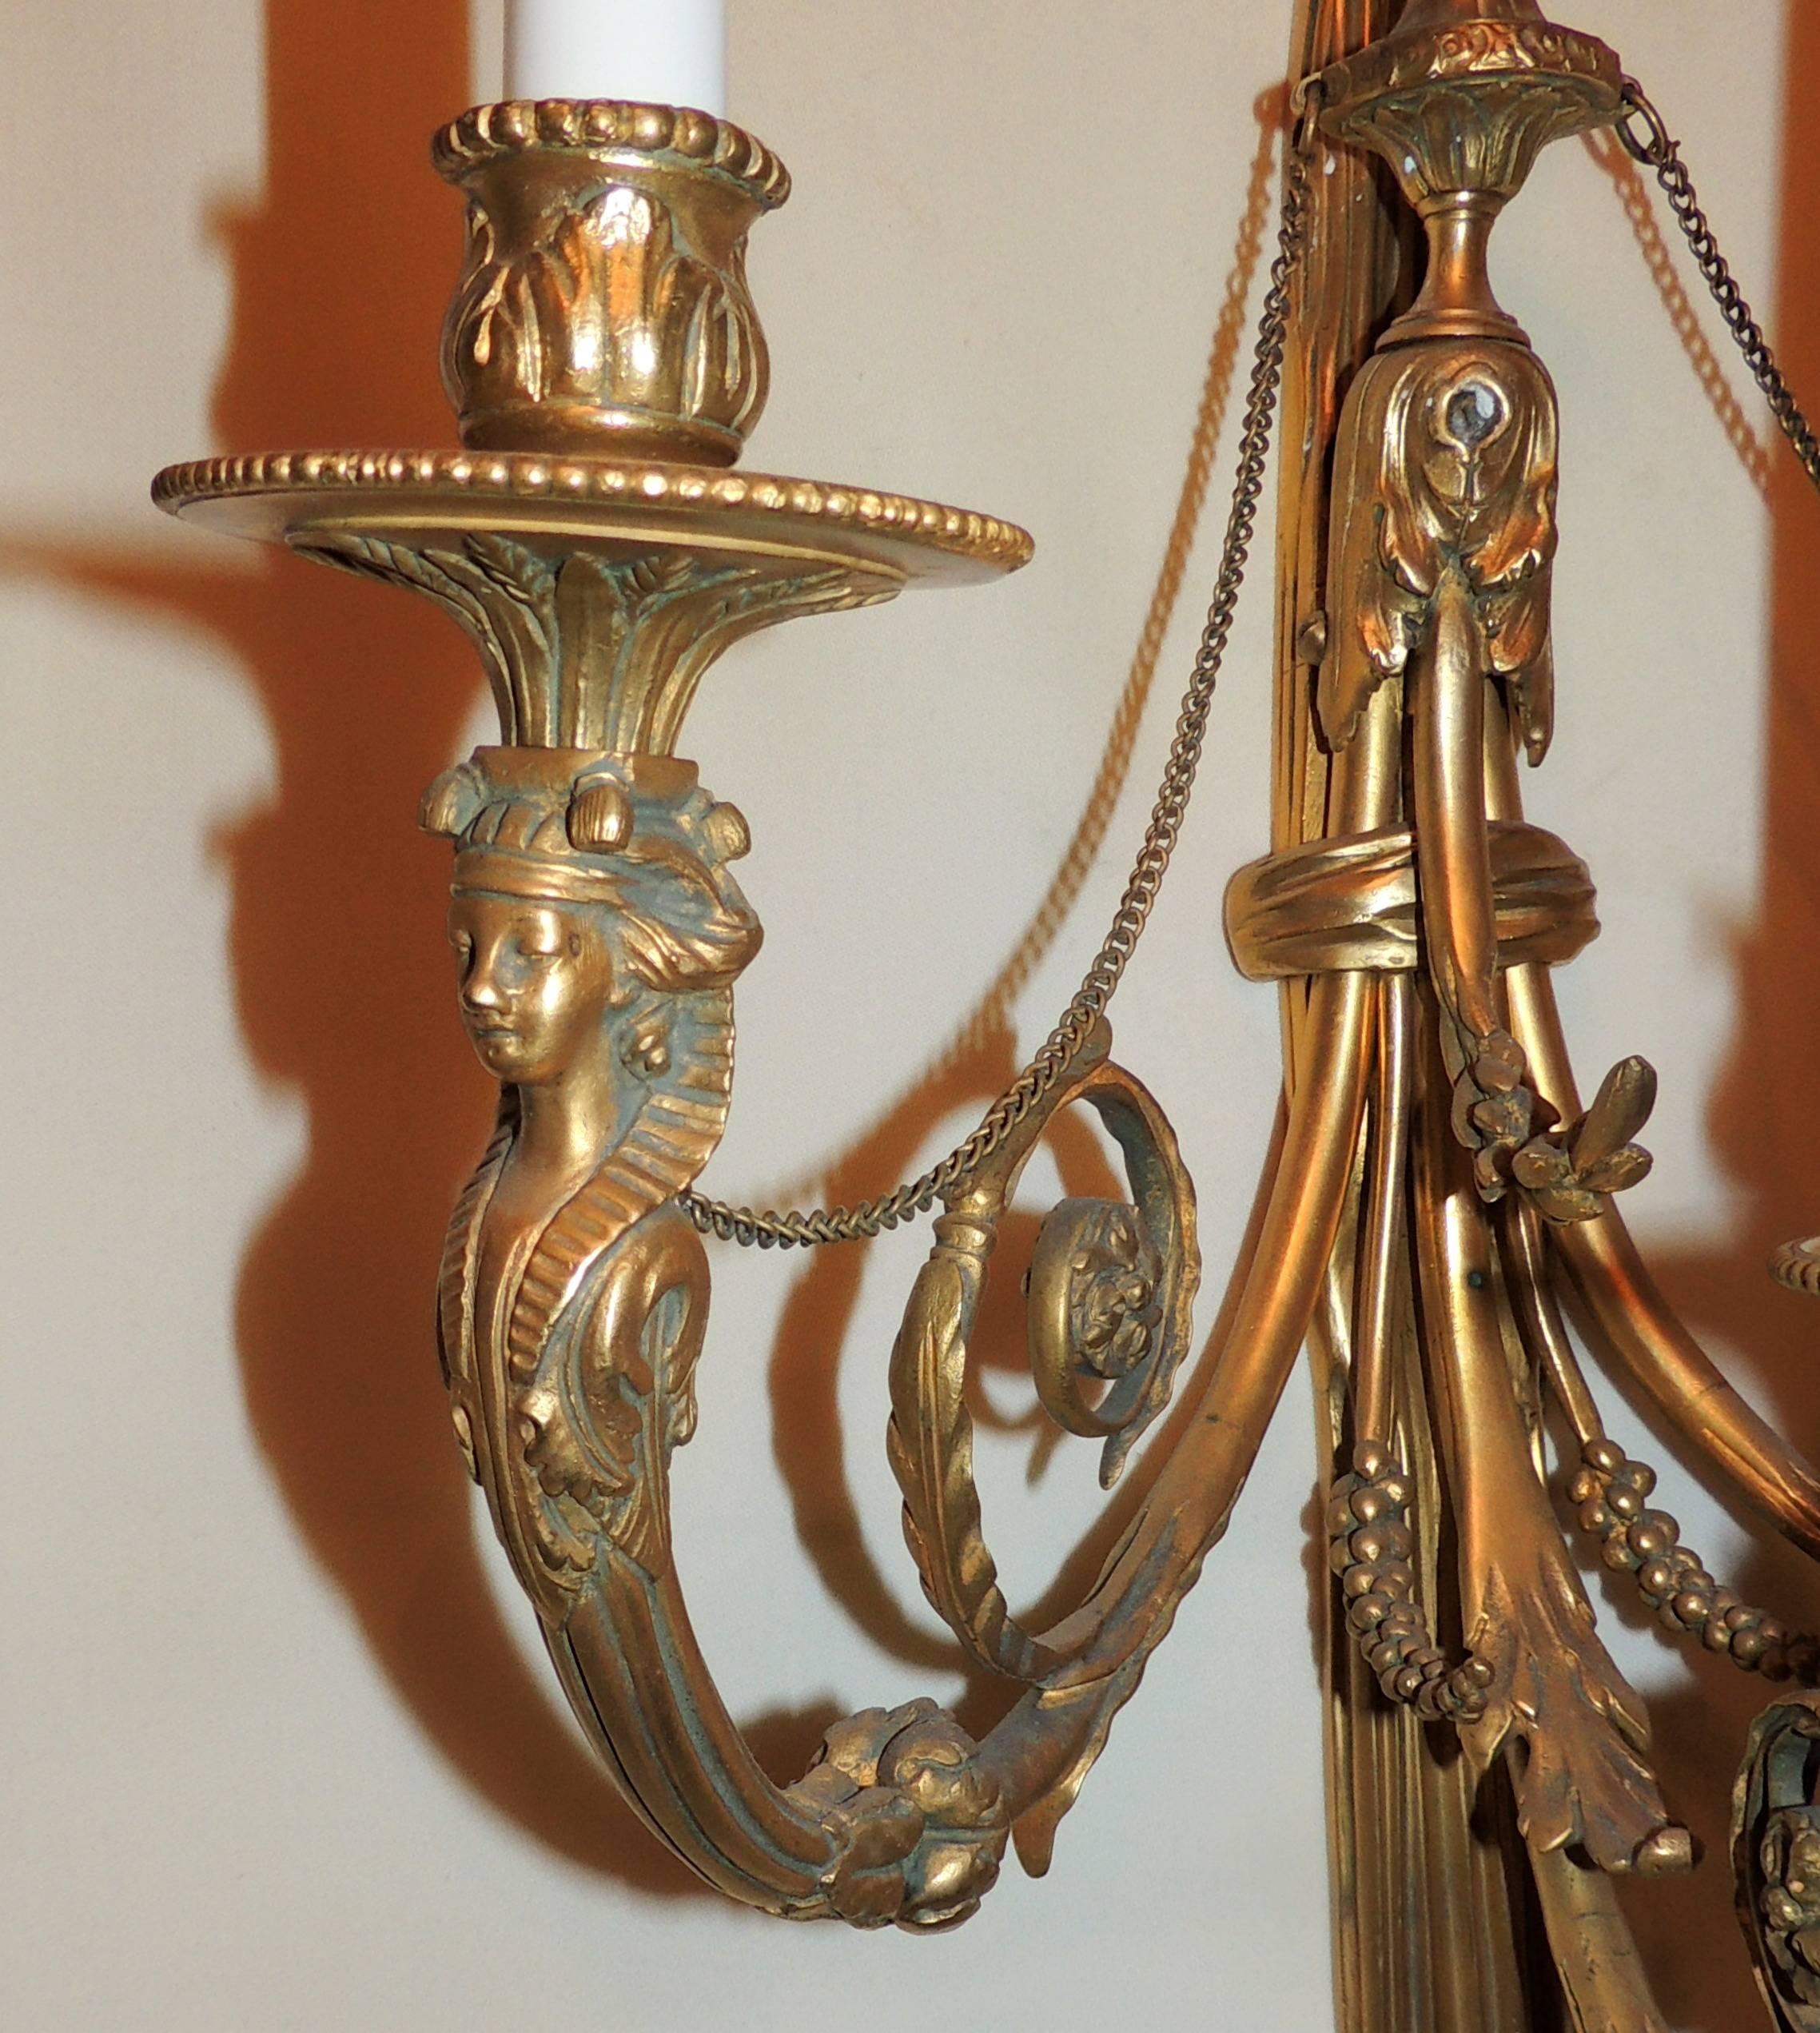 Ein wunderbares Paar von Französisch doré Bronze Regency neoklassischen Dame figuralen drei-Licht Empire große Quaste Wandleuchten diese Wandleuchten wurden komplett überarbeitet und kommen bereit zu installieren.